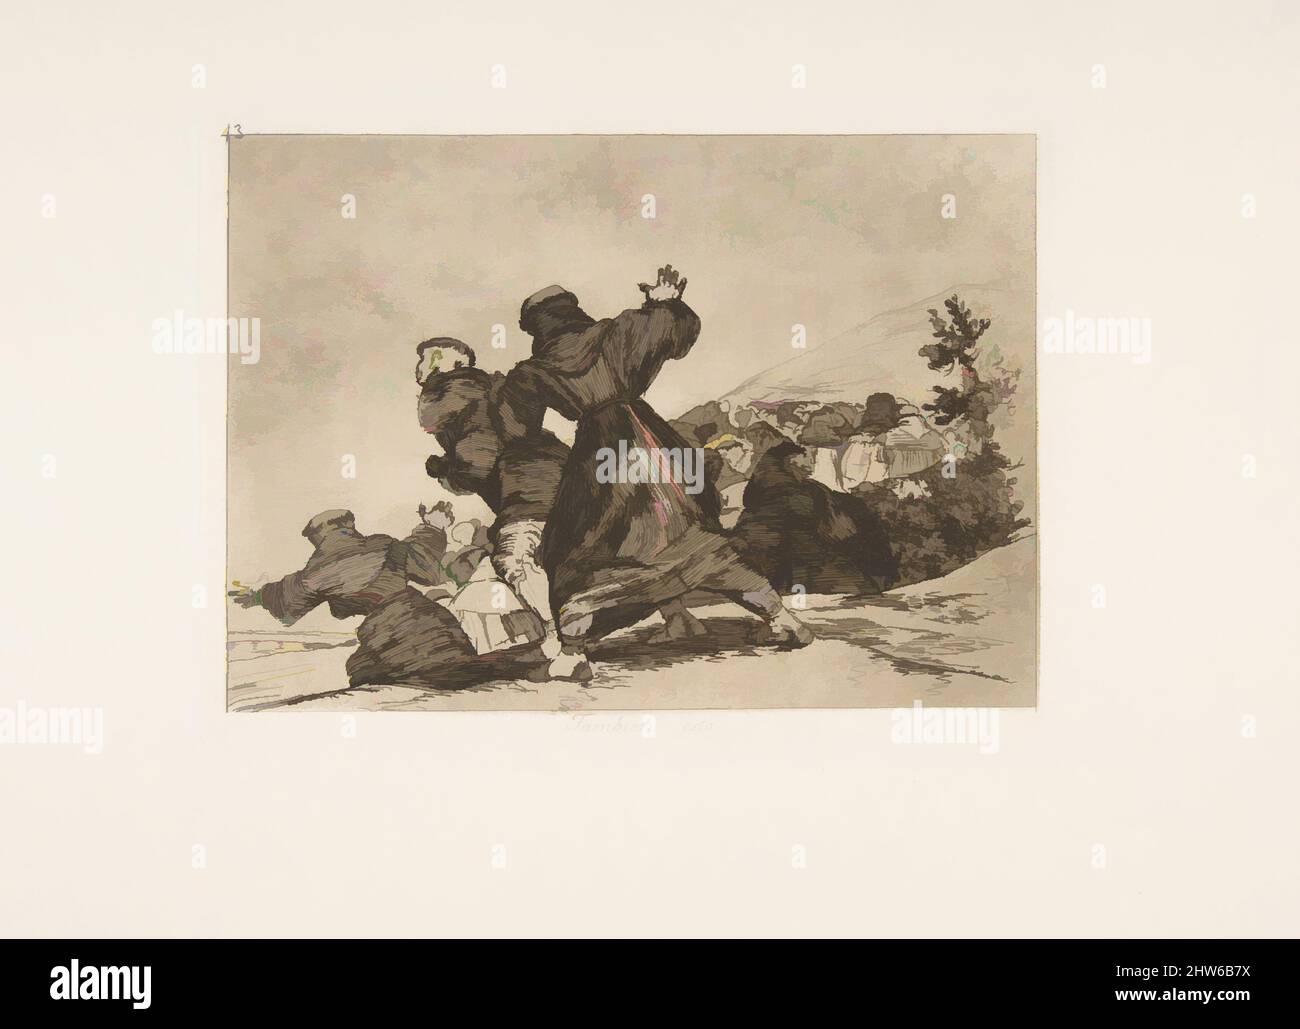 Art inspiré par la planche 43 de 'les désastres de la guerre' (Los Desastres de la Guerra): 'Cela aussi.' (Tambien esto.), 1810 (publié en 1863), Etching, aquatint bruni et burnisher, plaque : 6 1/8 × 8 1/8 po. (15,5 × 20,6 cm), Prints, Goya (Francisco de Goya y Lucientes) (espagnol, oeuvres classiques modernisées par Artotop avec une touche de modernité. Formes, couleur et valeur, impact visuel accrocheur sur l'art émotions par la liberté d'œuvres d'art d'une manière contemporaine. Un message intemporel qui cherche une nouvelle direction créative. Artistes qui se tournent vers le support numérique et créent le NFT Artotop Banque D'Images